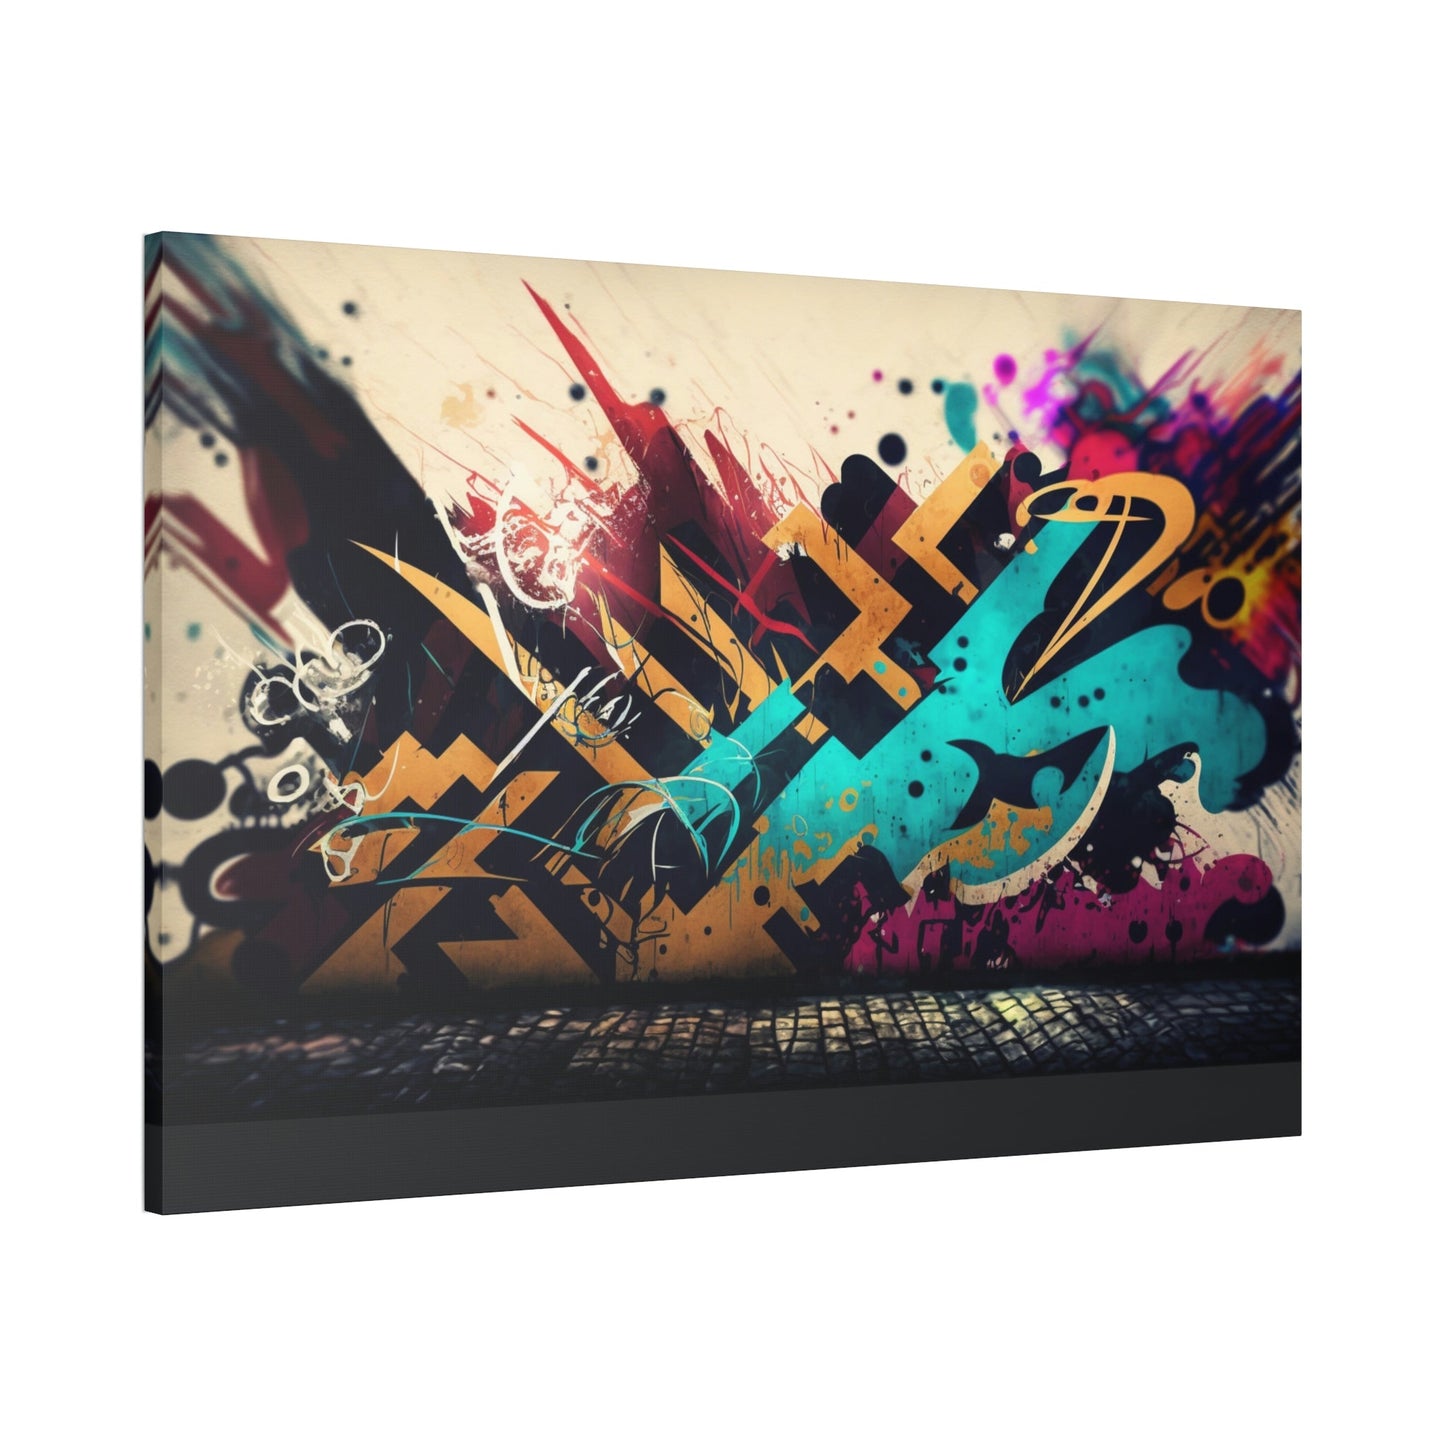 Framed Canvas & Poster Print of Graffiti Art: A Burst of Energy